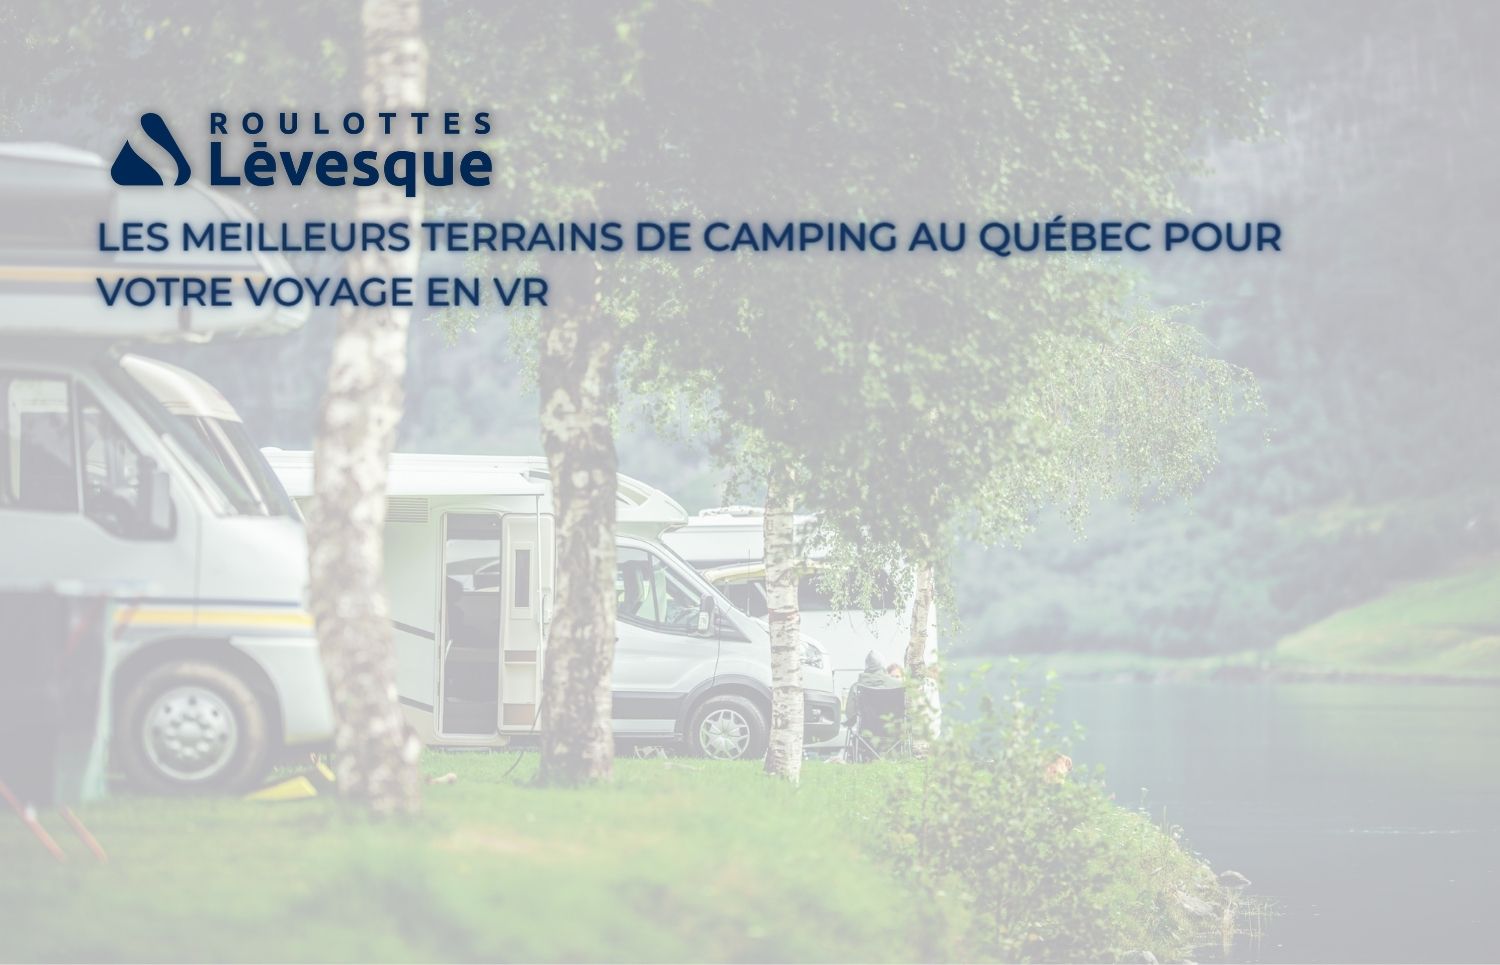 Terrain de camping au Québec : les meilleurs spots pour votre voyage en VR